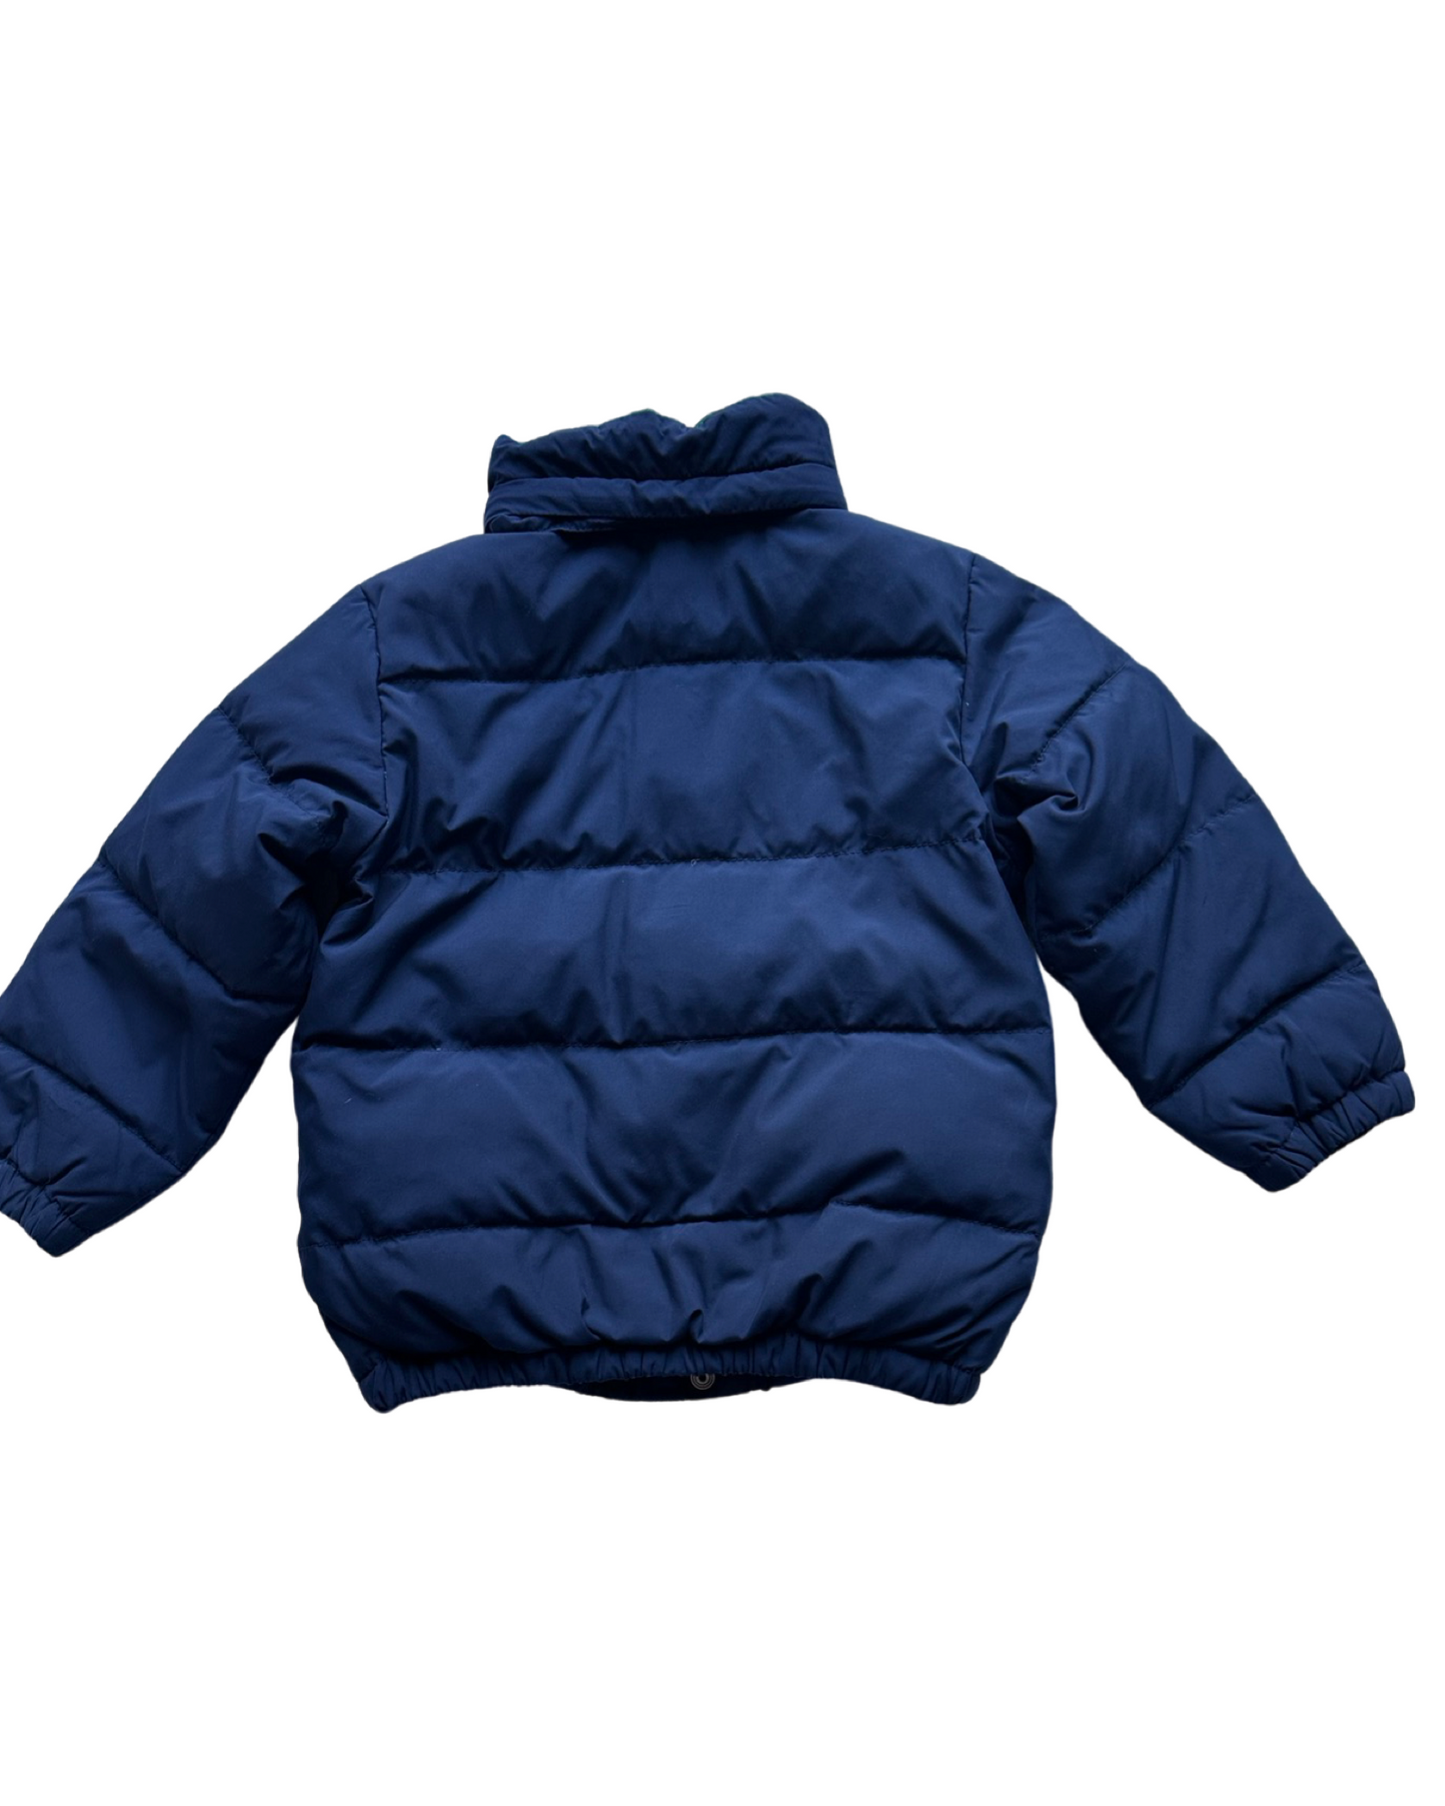 Ralph Lauren navy puffer jacket (size 3-4yrs)